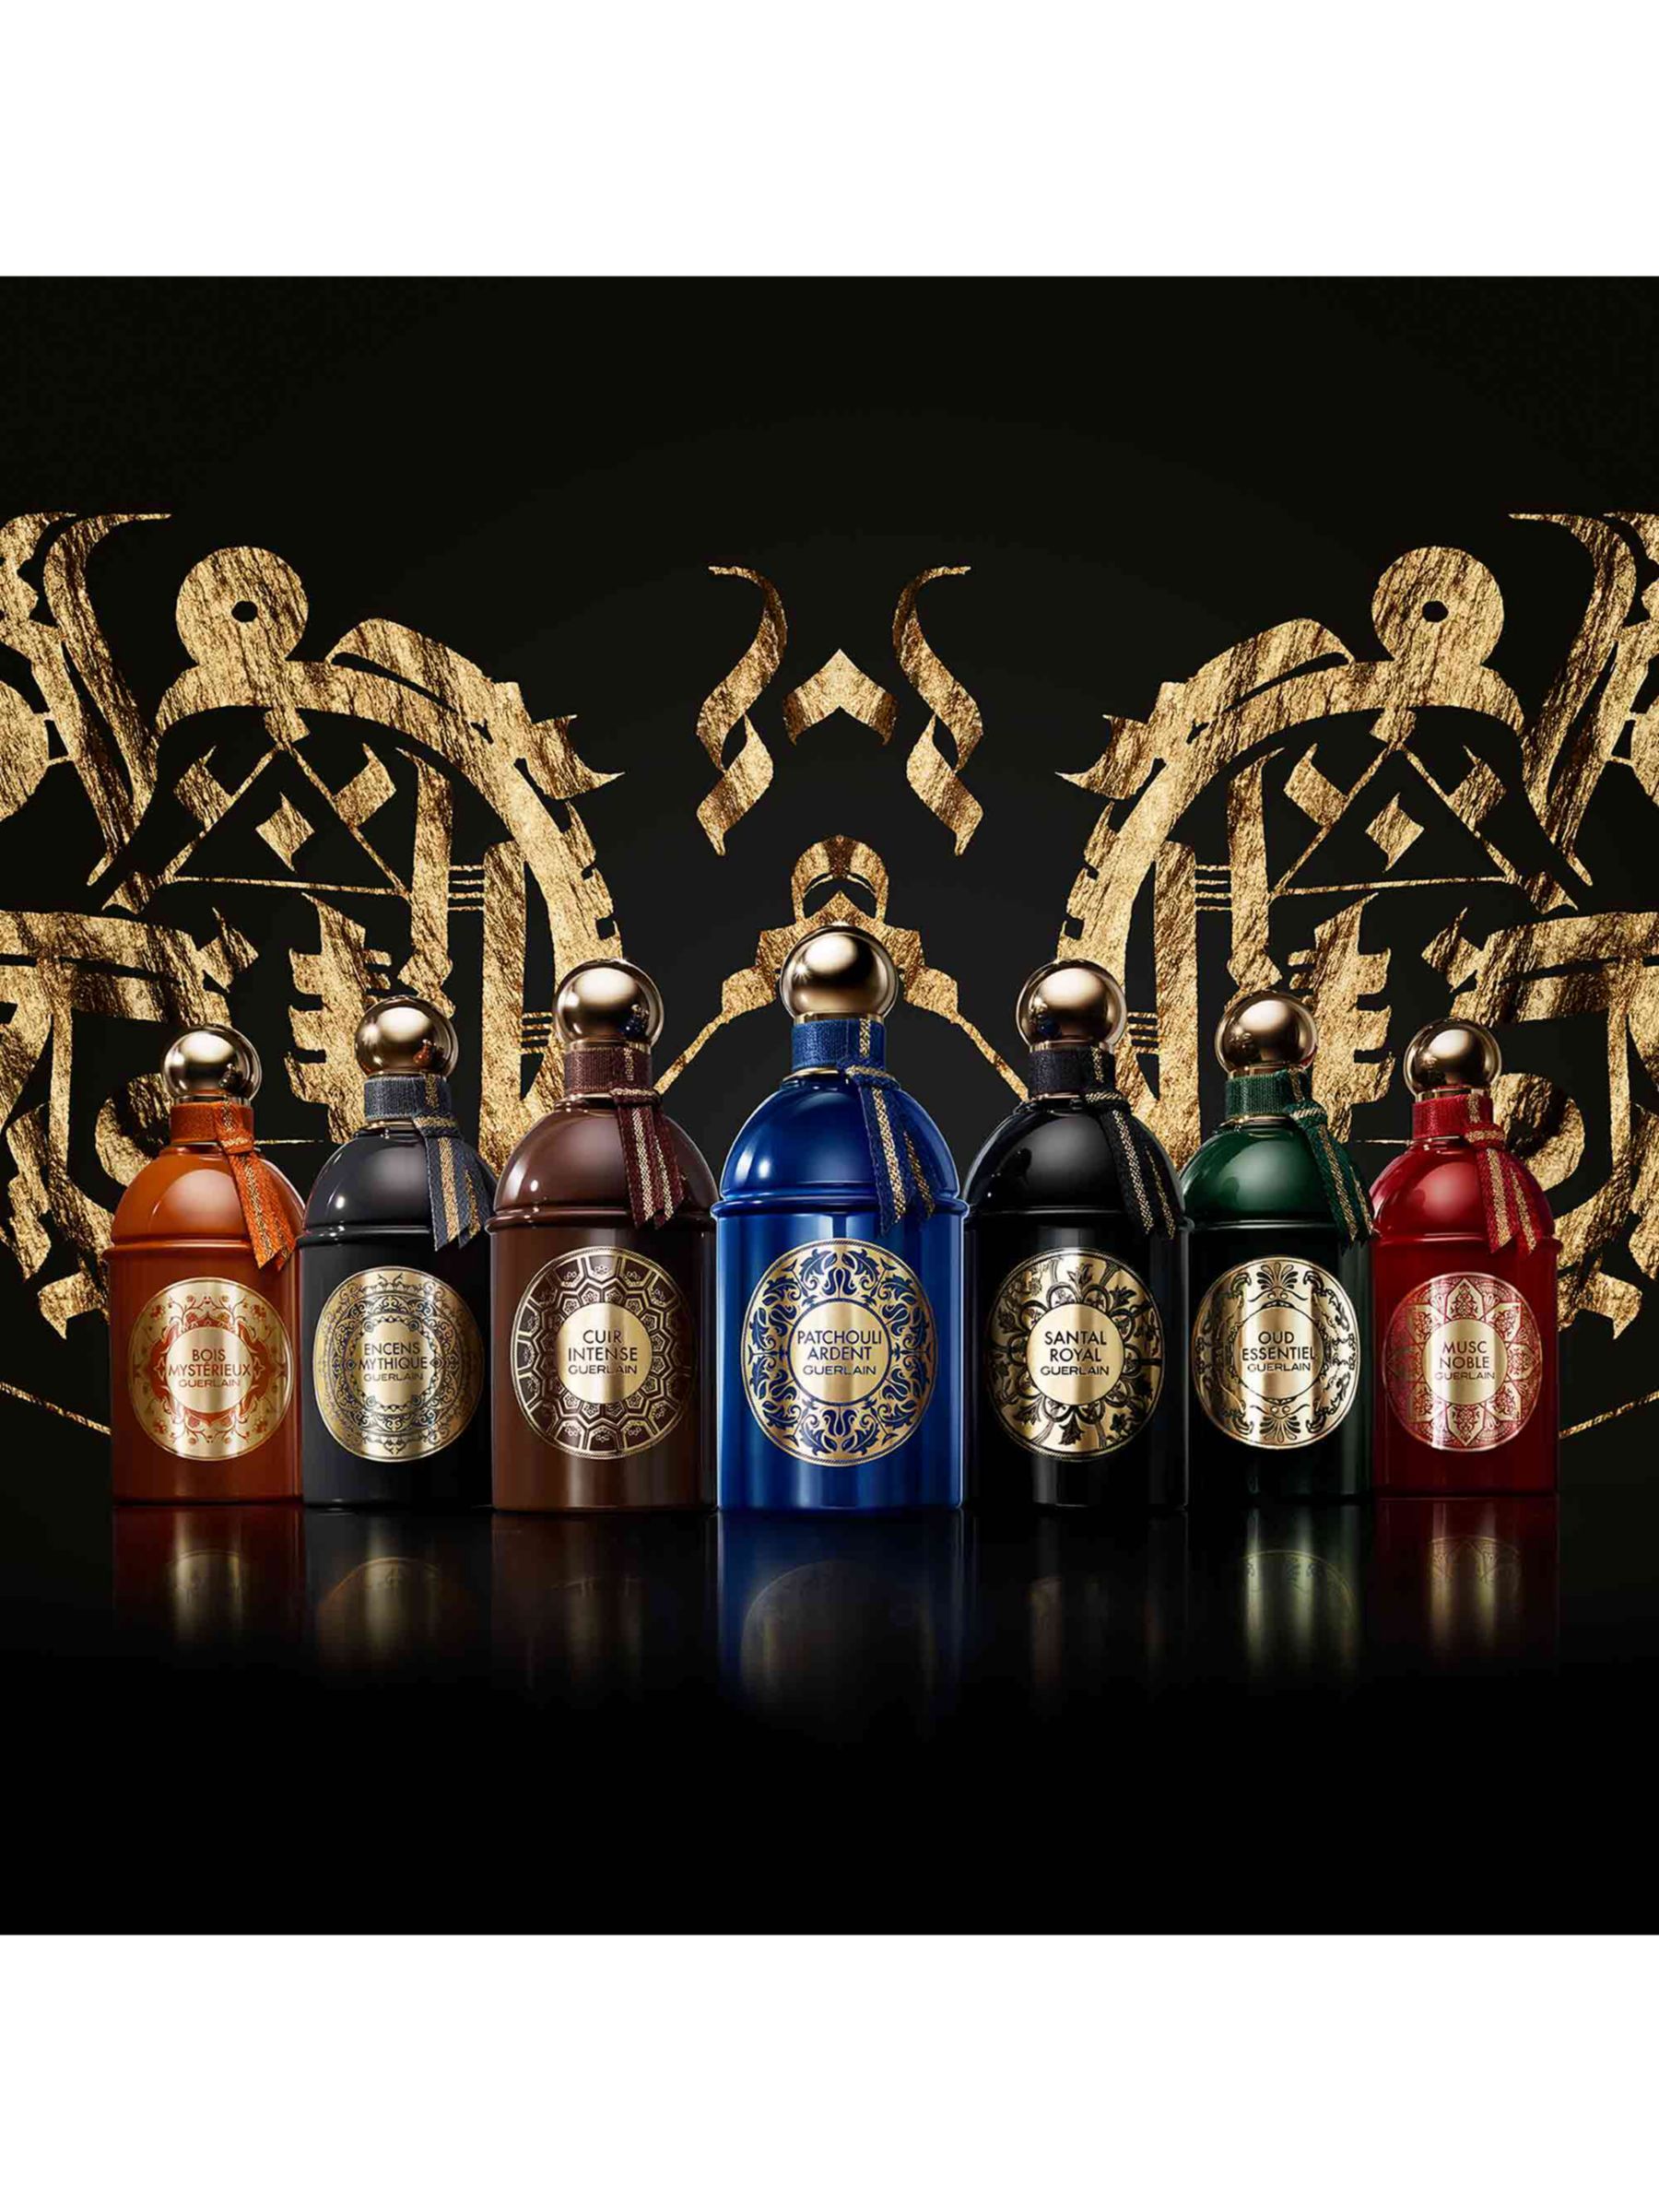 Guerlain Les Absolus d'Orient Santal Royal Eau de Parfum, 125ml 5